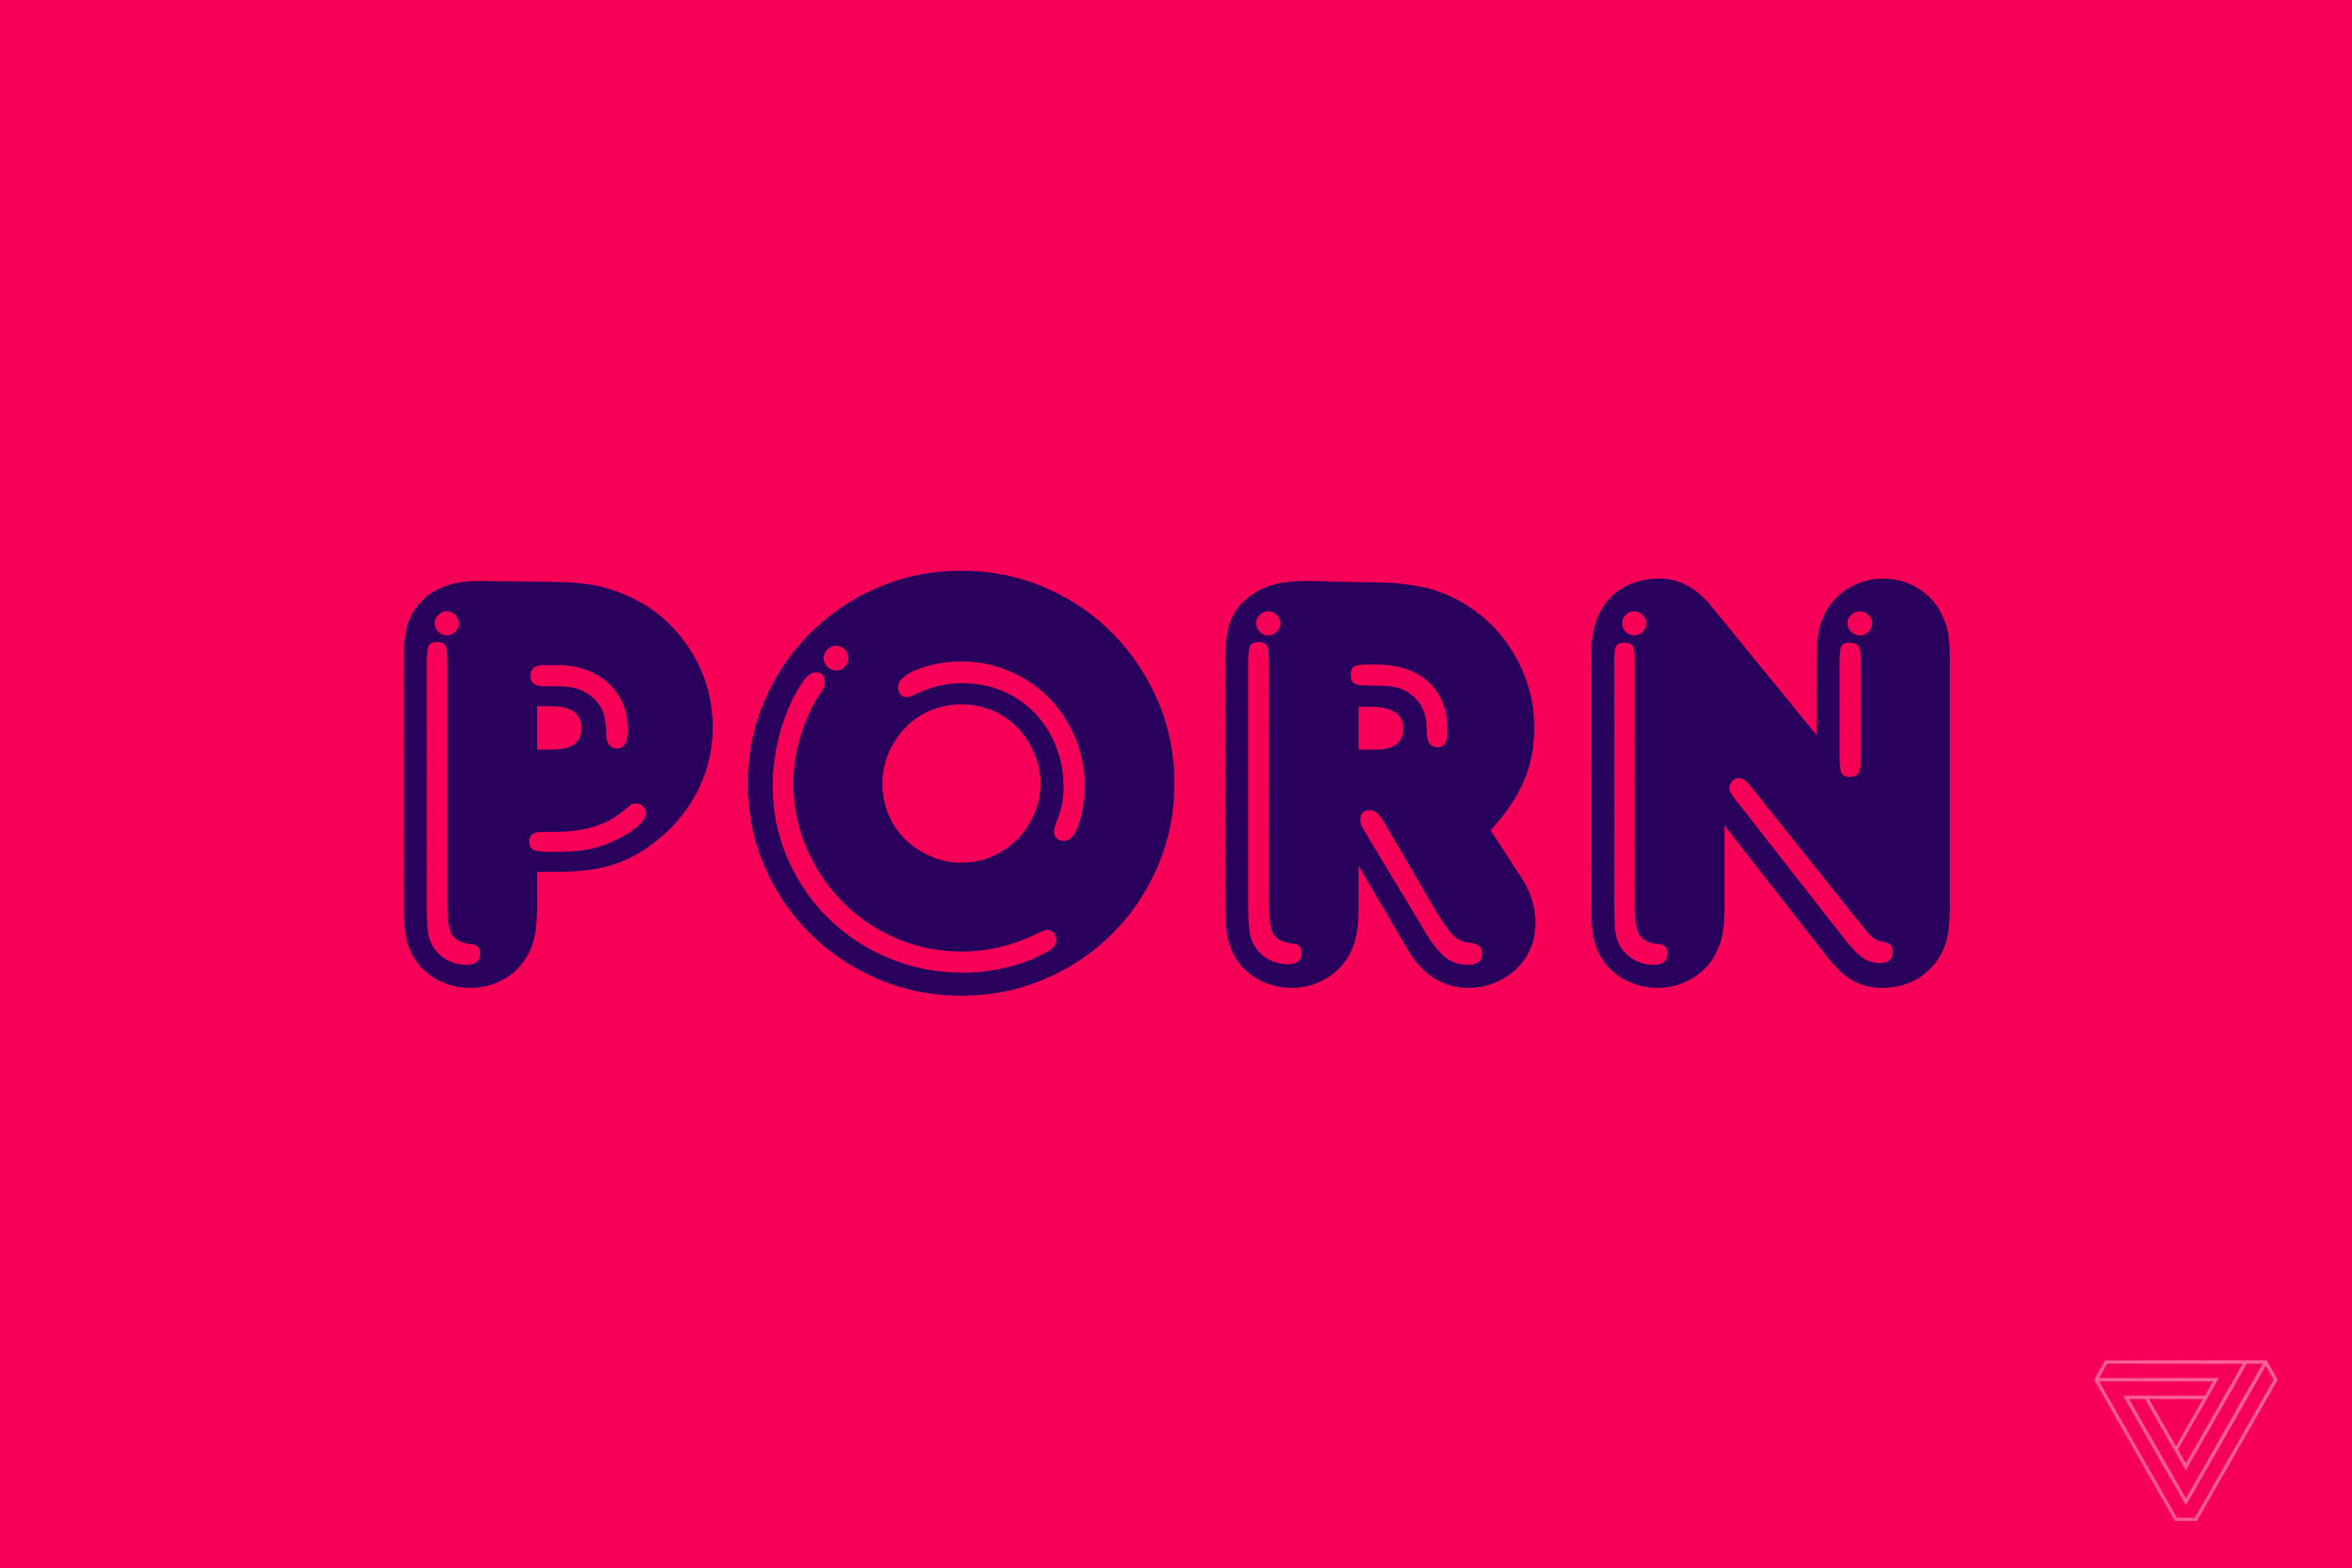 Il mio gratis porno video